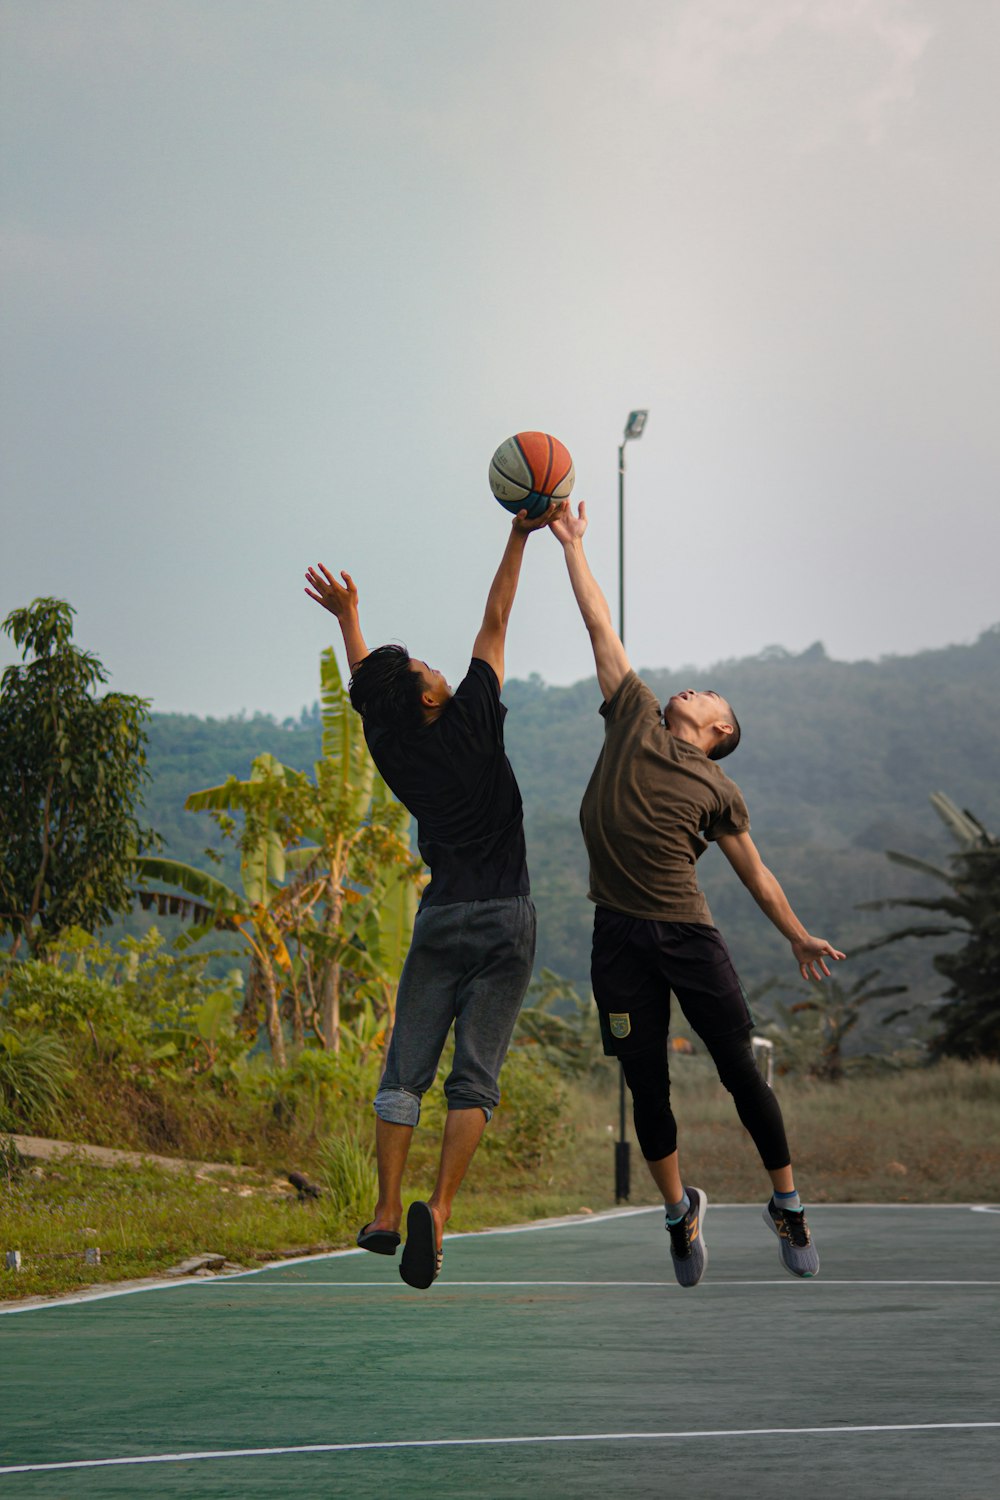 농구 코트에서 농구를 하는 두 젊은이